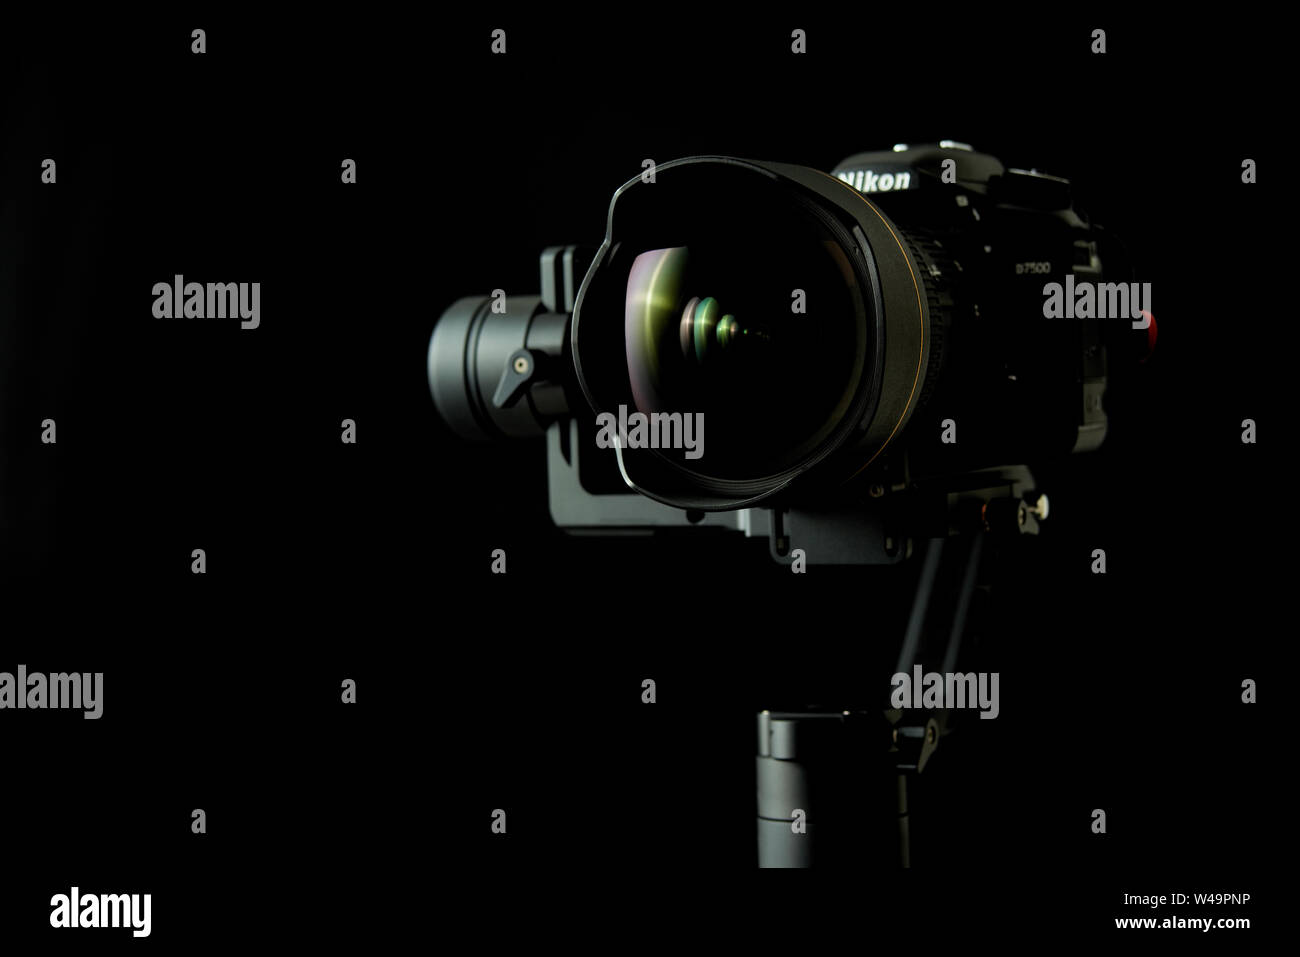 Grenoble, Francia - 23 Maggio 2019: Close-up di una Nikon D750 DSRL fotocamera utilizzando una gru Zhiyun-2 stabilizzatore, con bassa illuminazione chiave e uno sfondo nero Foto Stock